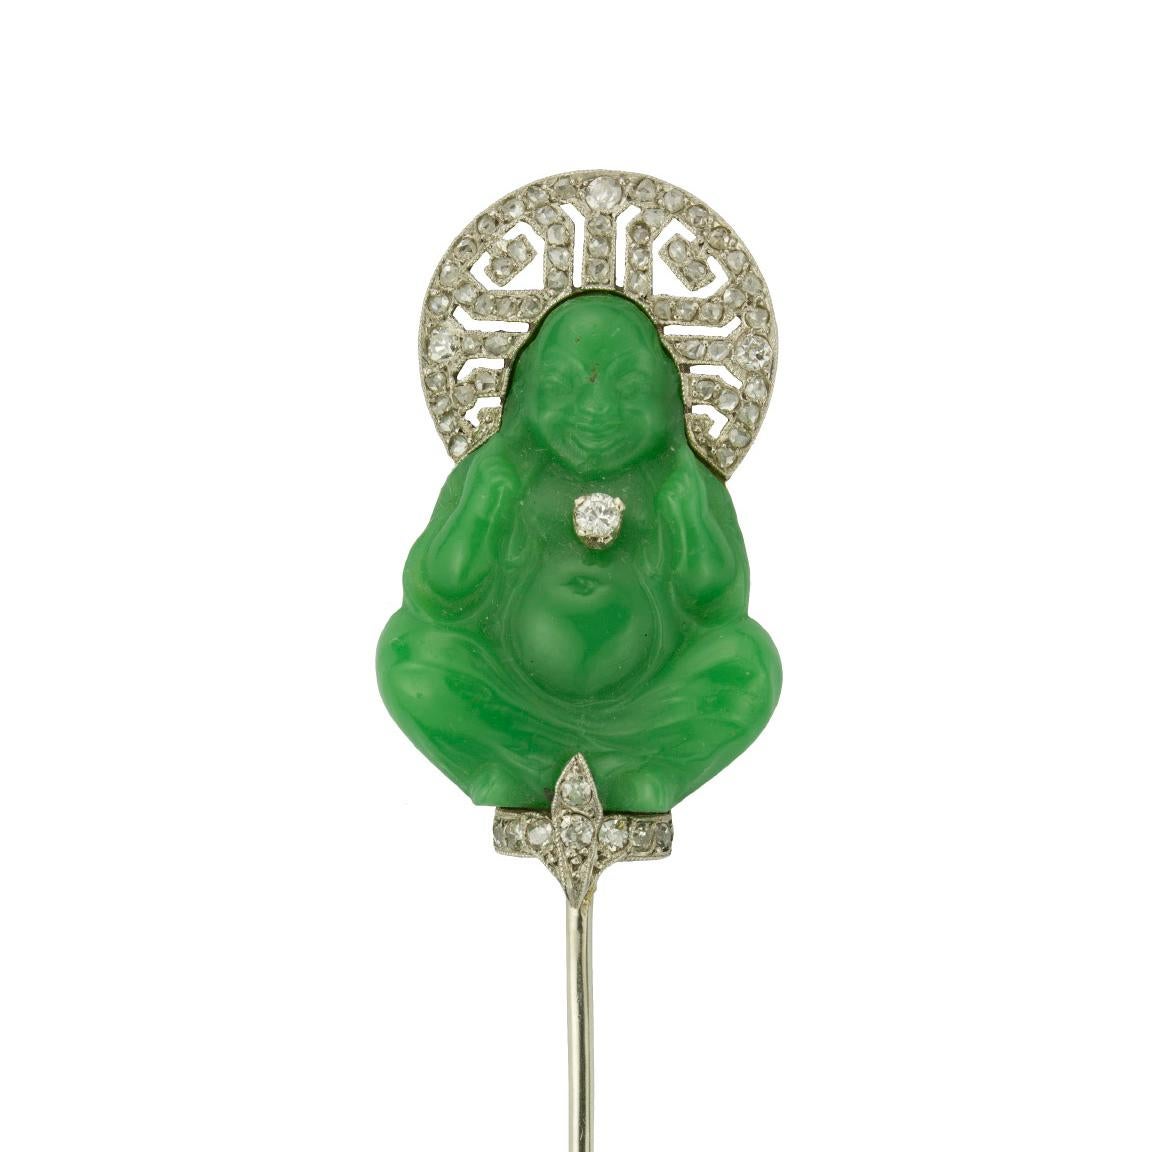 Épingle à sureté Bouddha Art déco, sertie d'un Bouddha en pâte de verre verte, reposant sur un piédestal à fleur de lys en diamant, d'une couronne en platine en forme de halo et d'un pendentif en diamant simple, le tout sur une monture en platine et